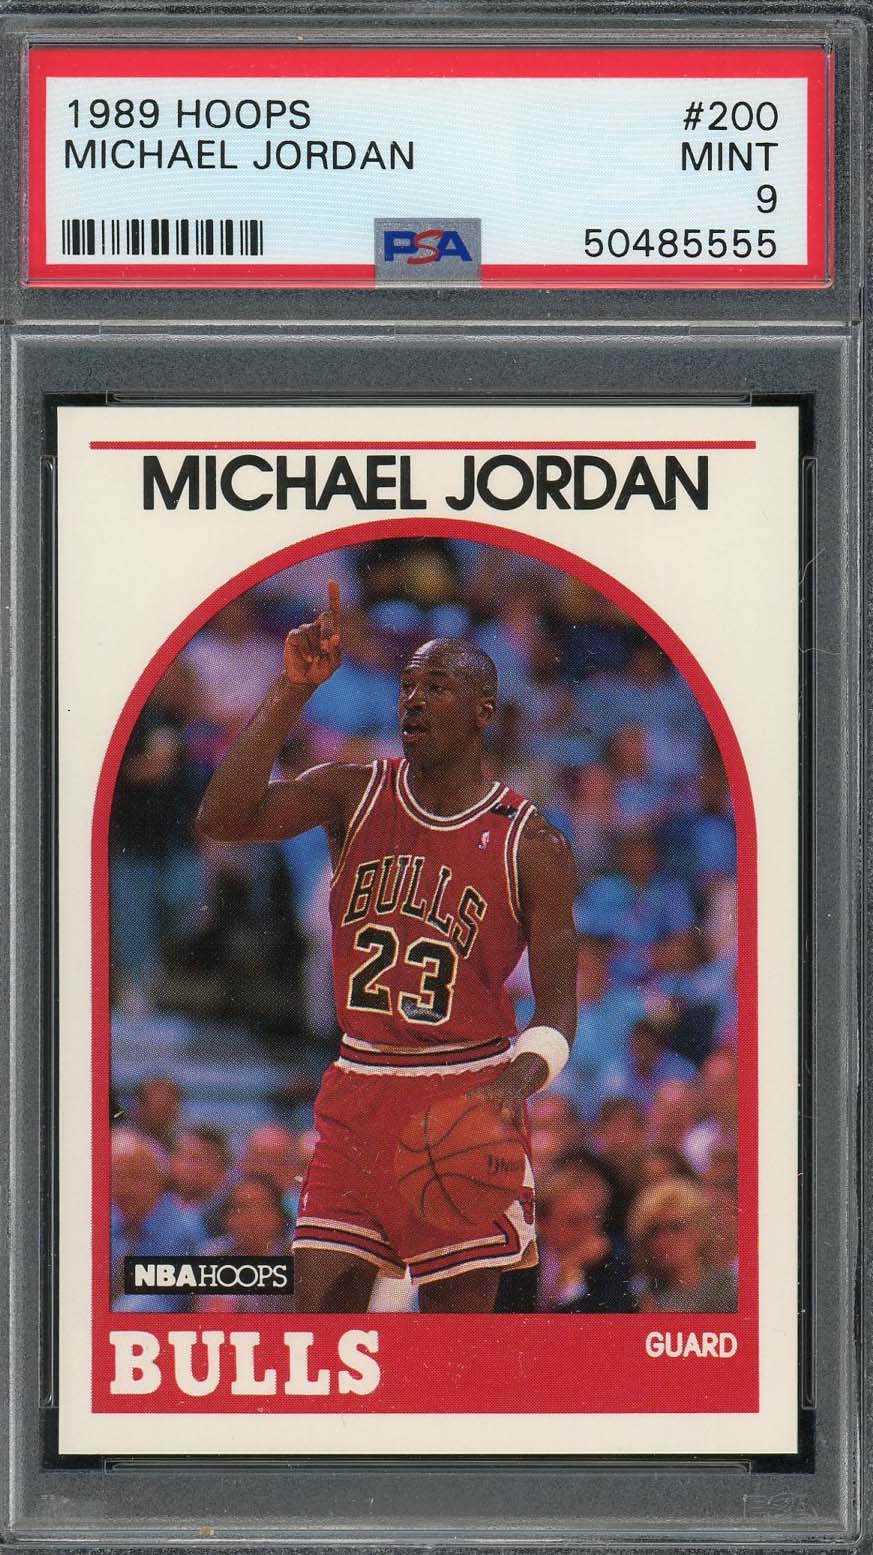 マイケル ジョーダン 1989 フープ バスケットボール カード #200 